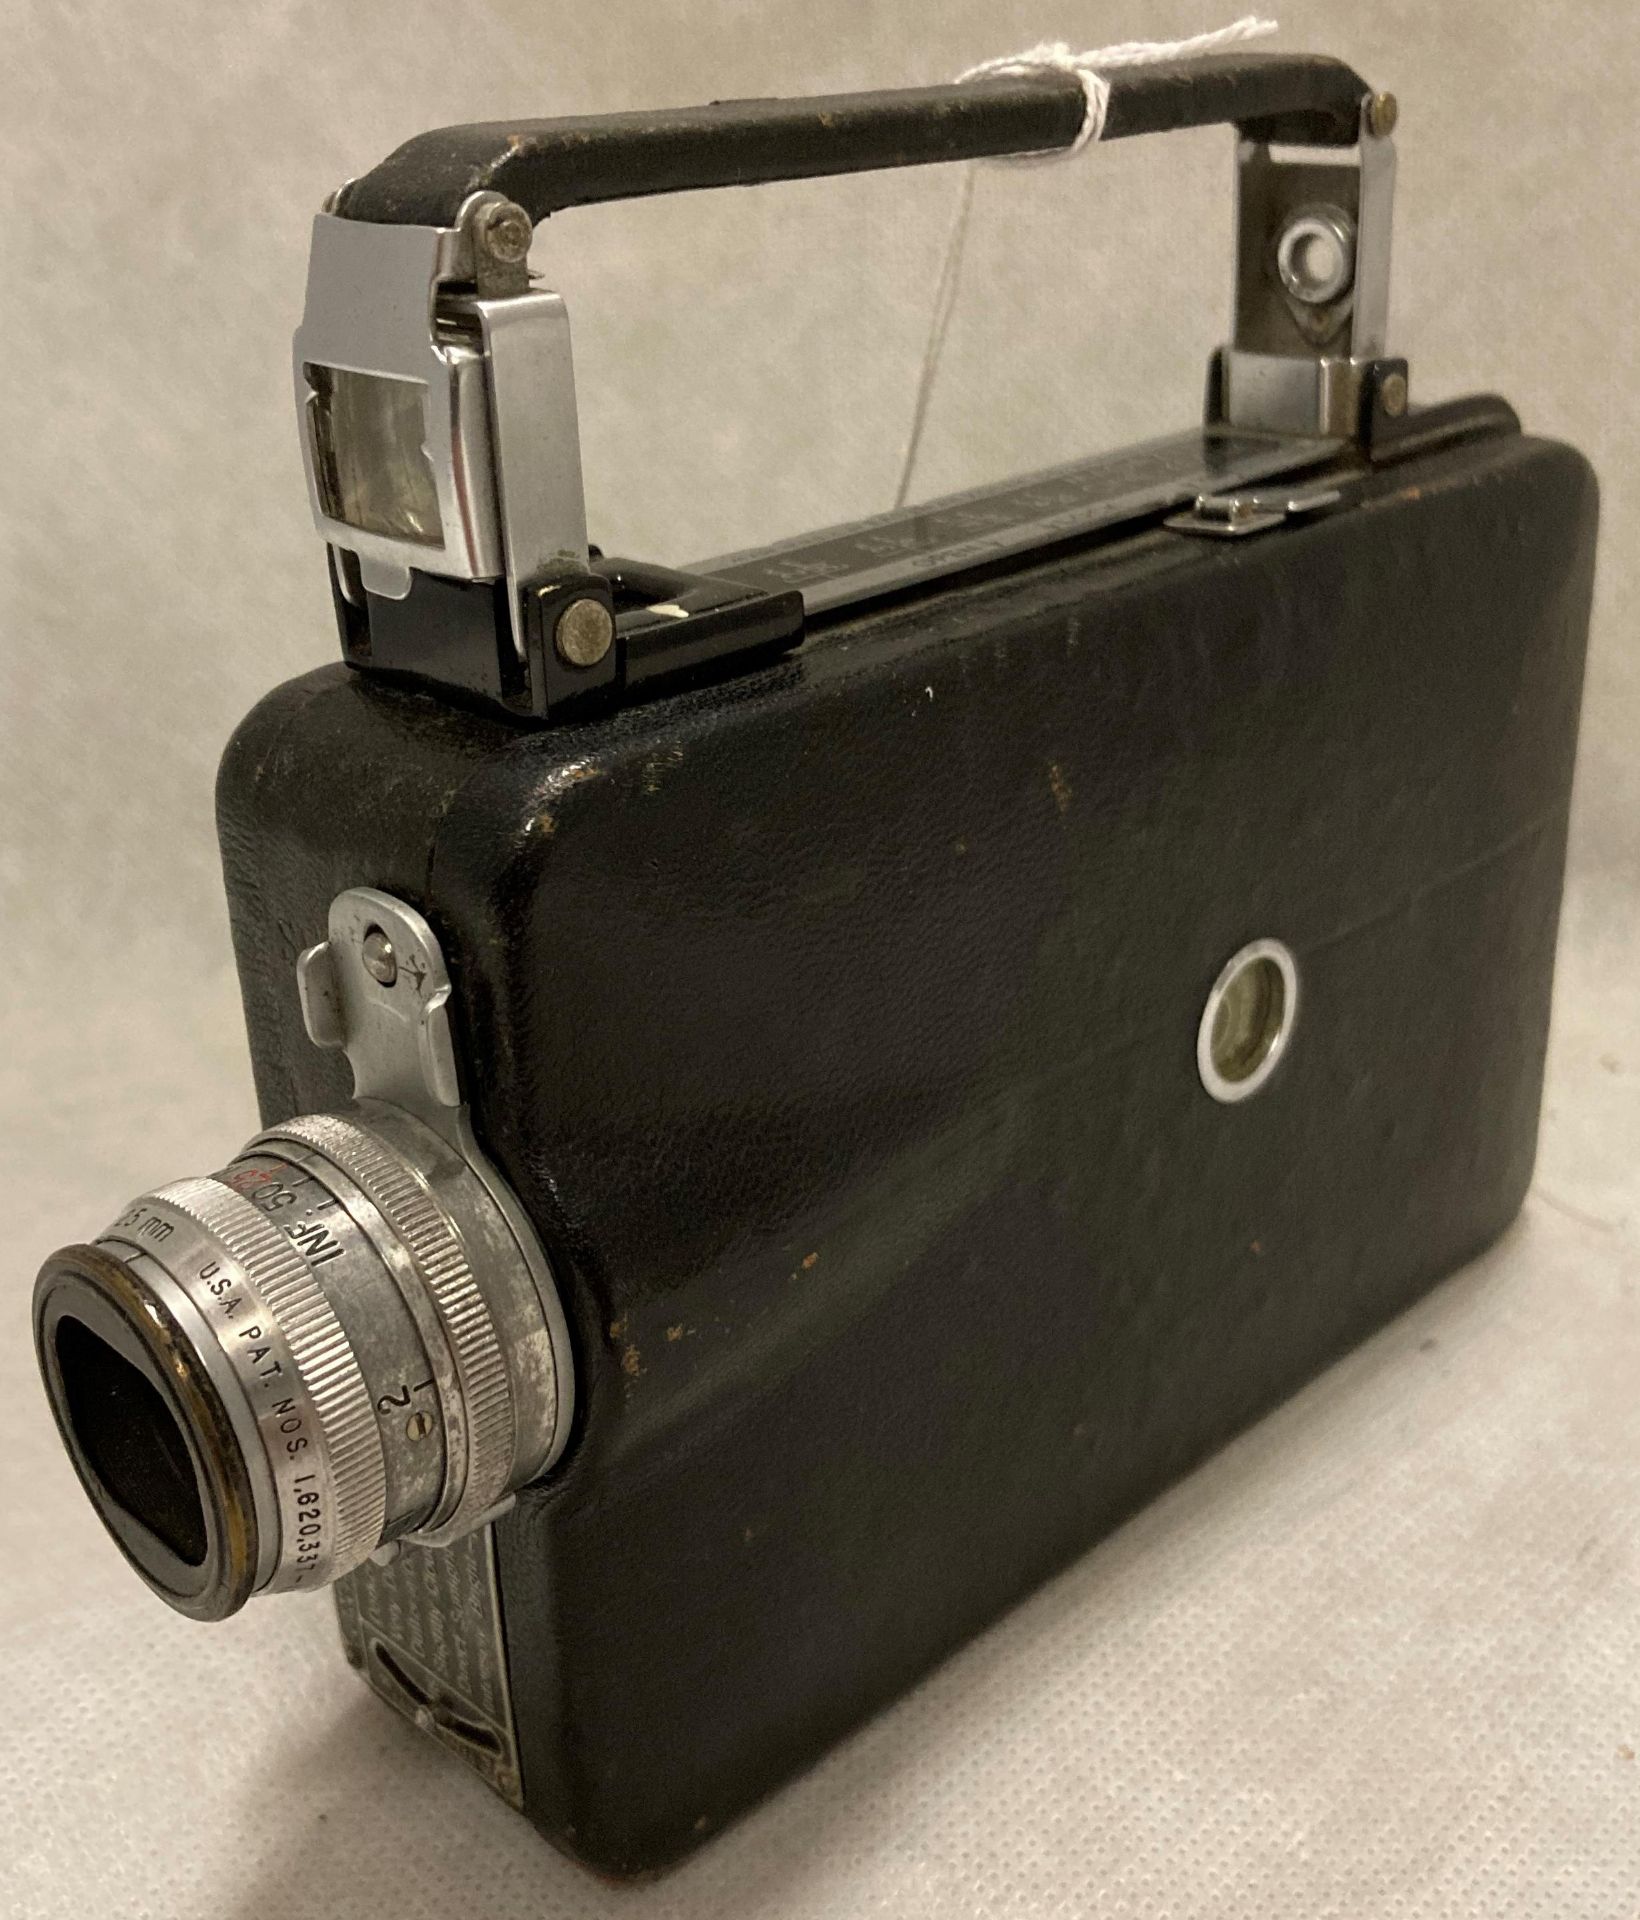 An Eastman Kodak Cine-Kodak Magazine cine camera